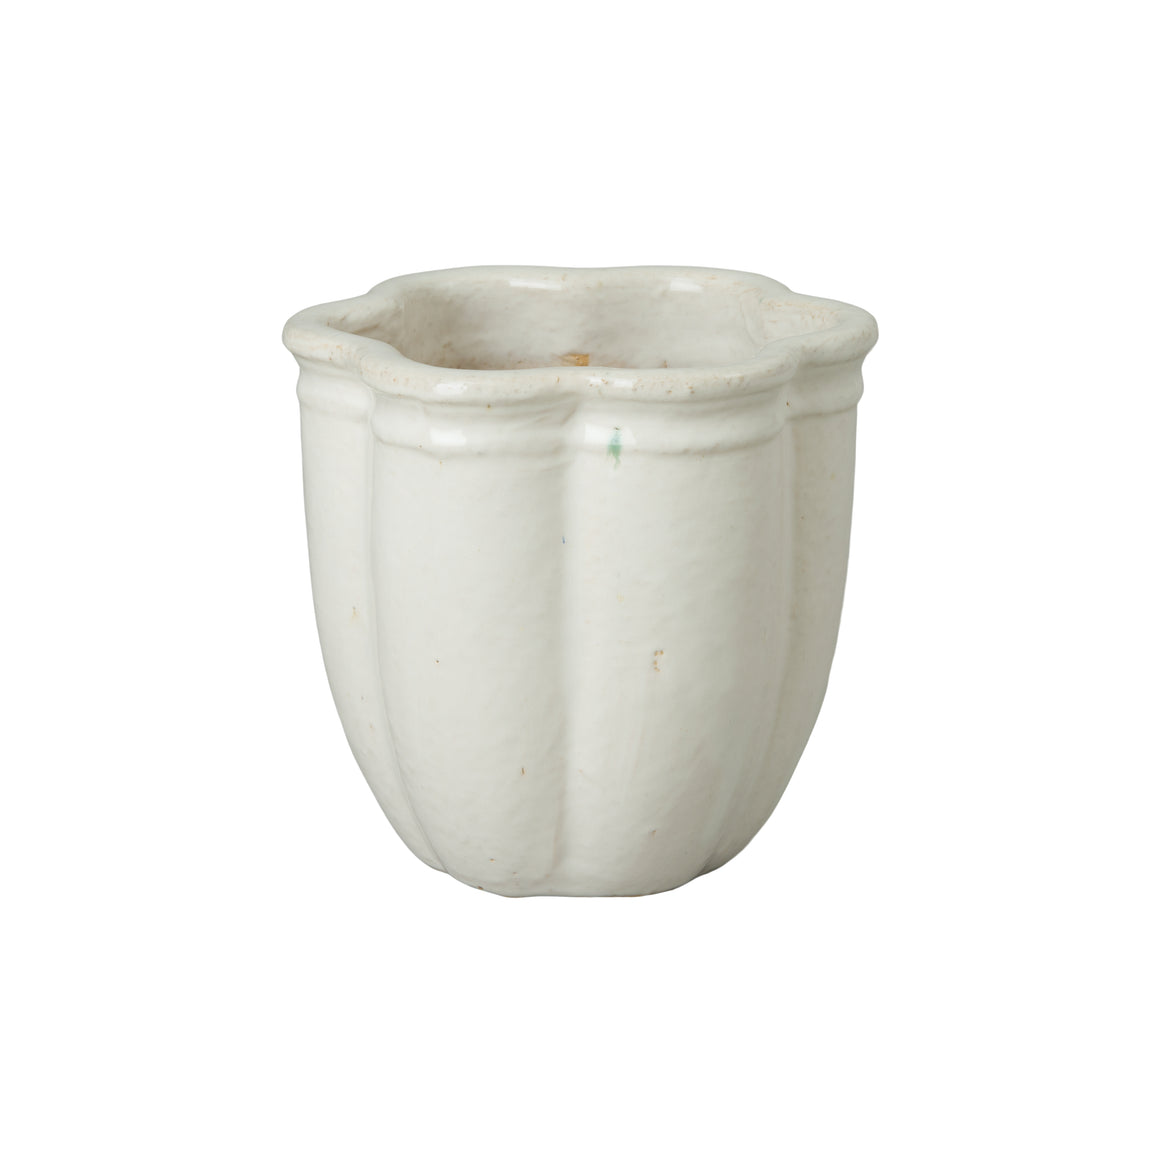 Scalloped White Ceramic Planter - Small